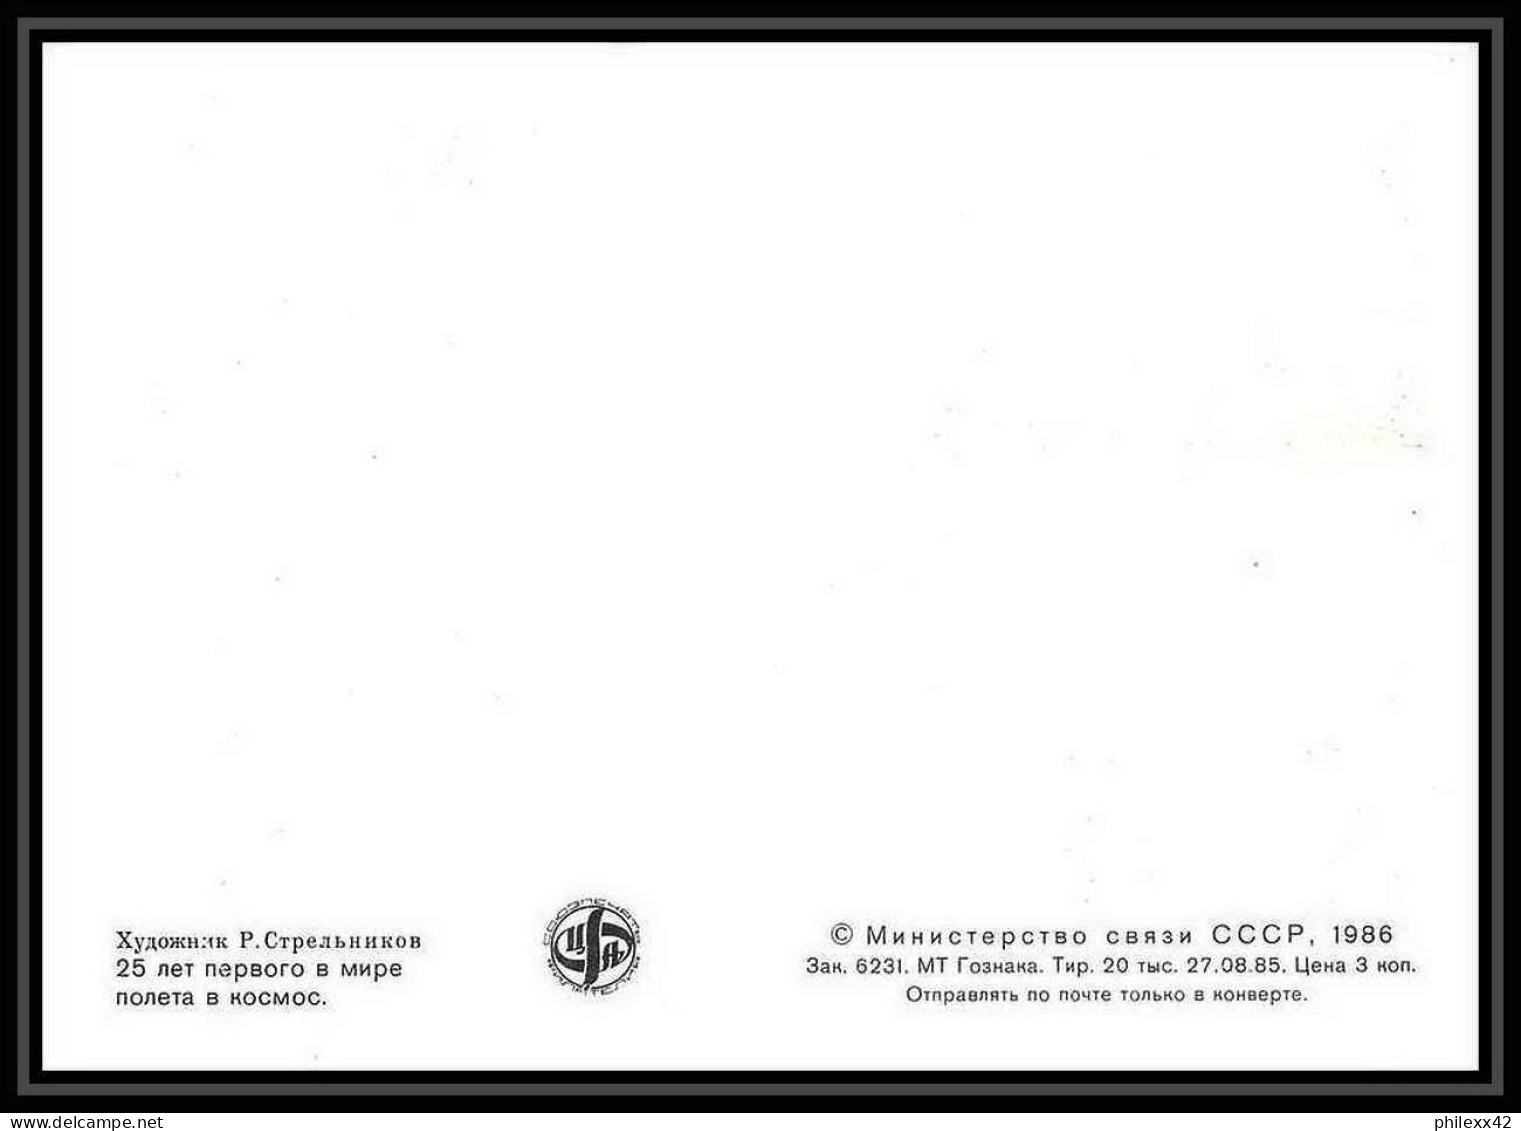 9274/ Espace (space Raumfahrt) Carte Maximum (card) 12/4/1986 Tsiolkovski (Russia Urss USSR) - Russia & USSR